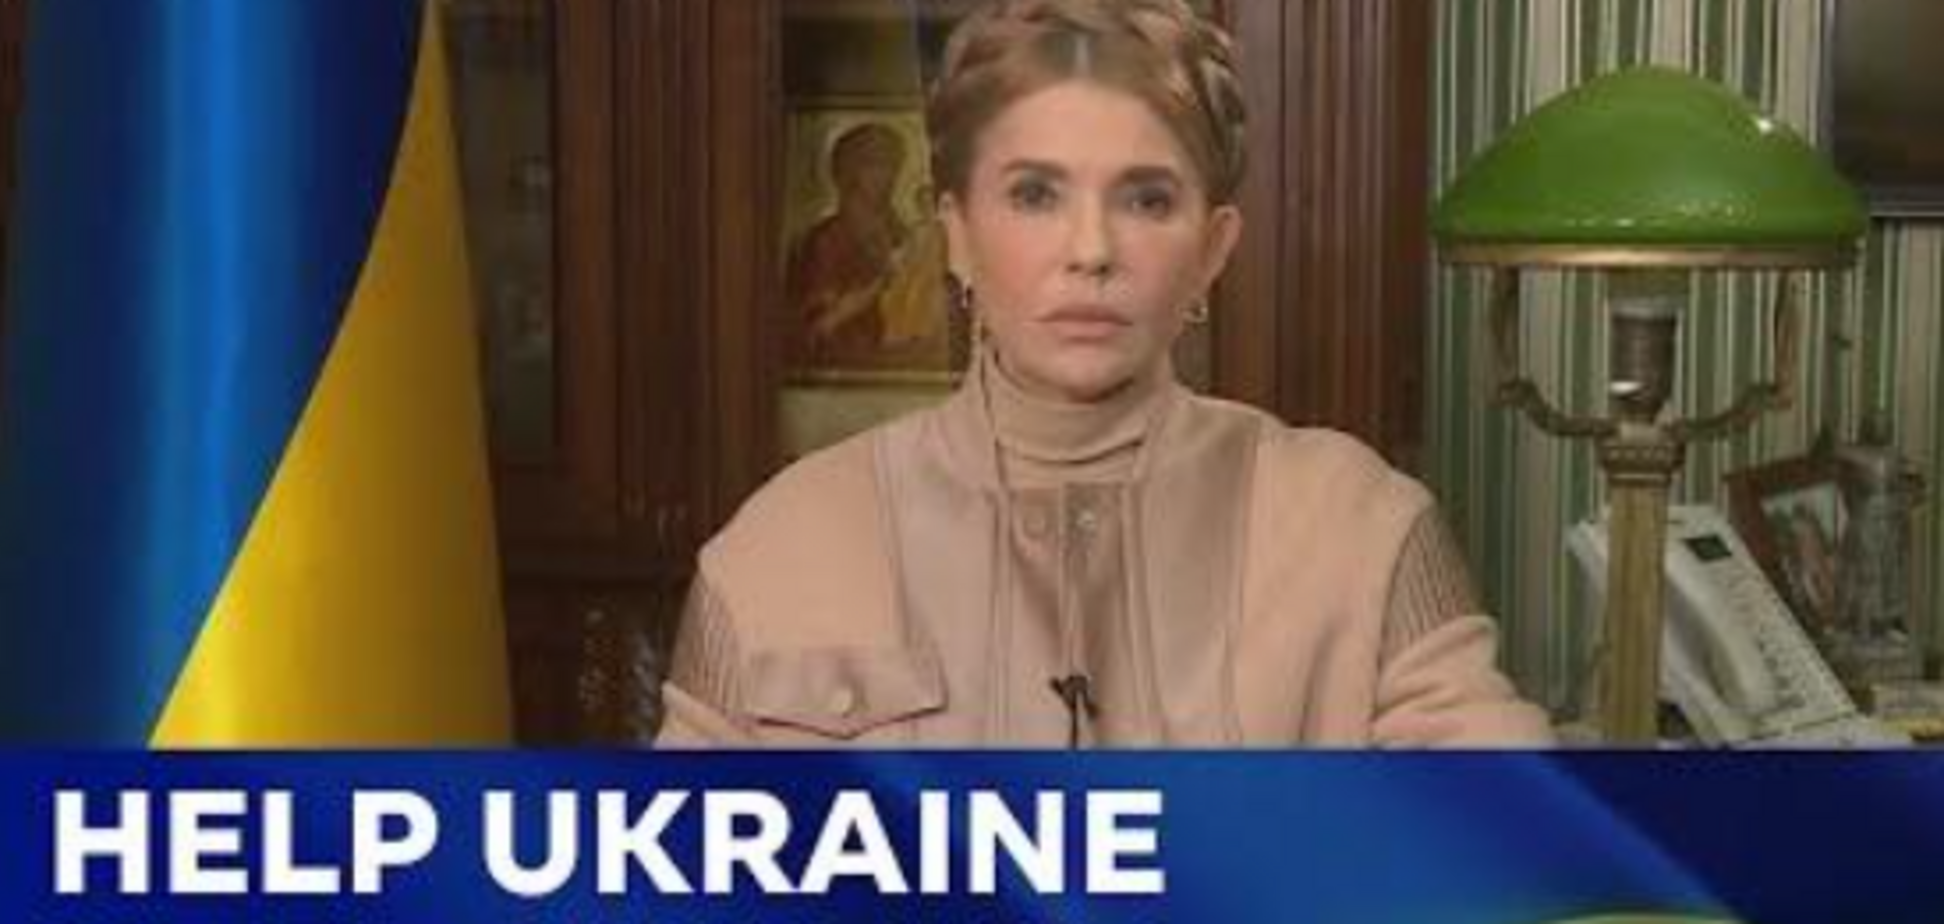 Звернення Юлії Тимошенко до народів, лідерів, парламентів та урядів світу (in English below)